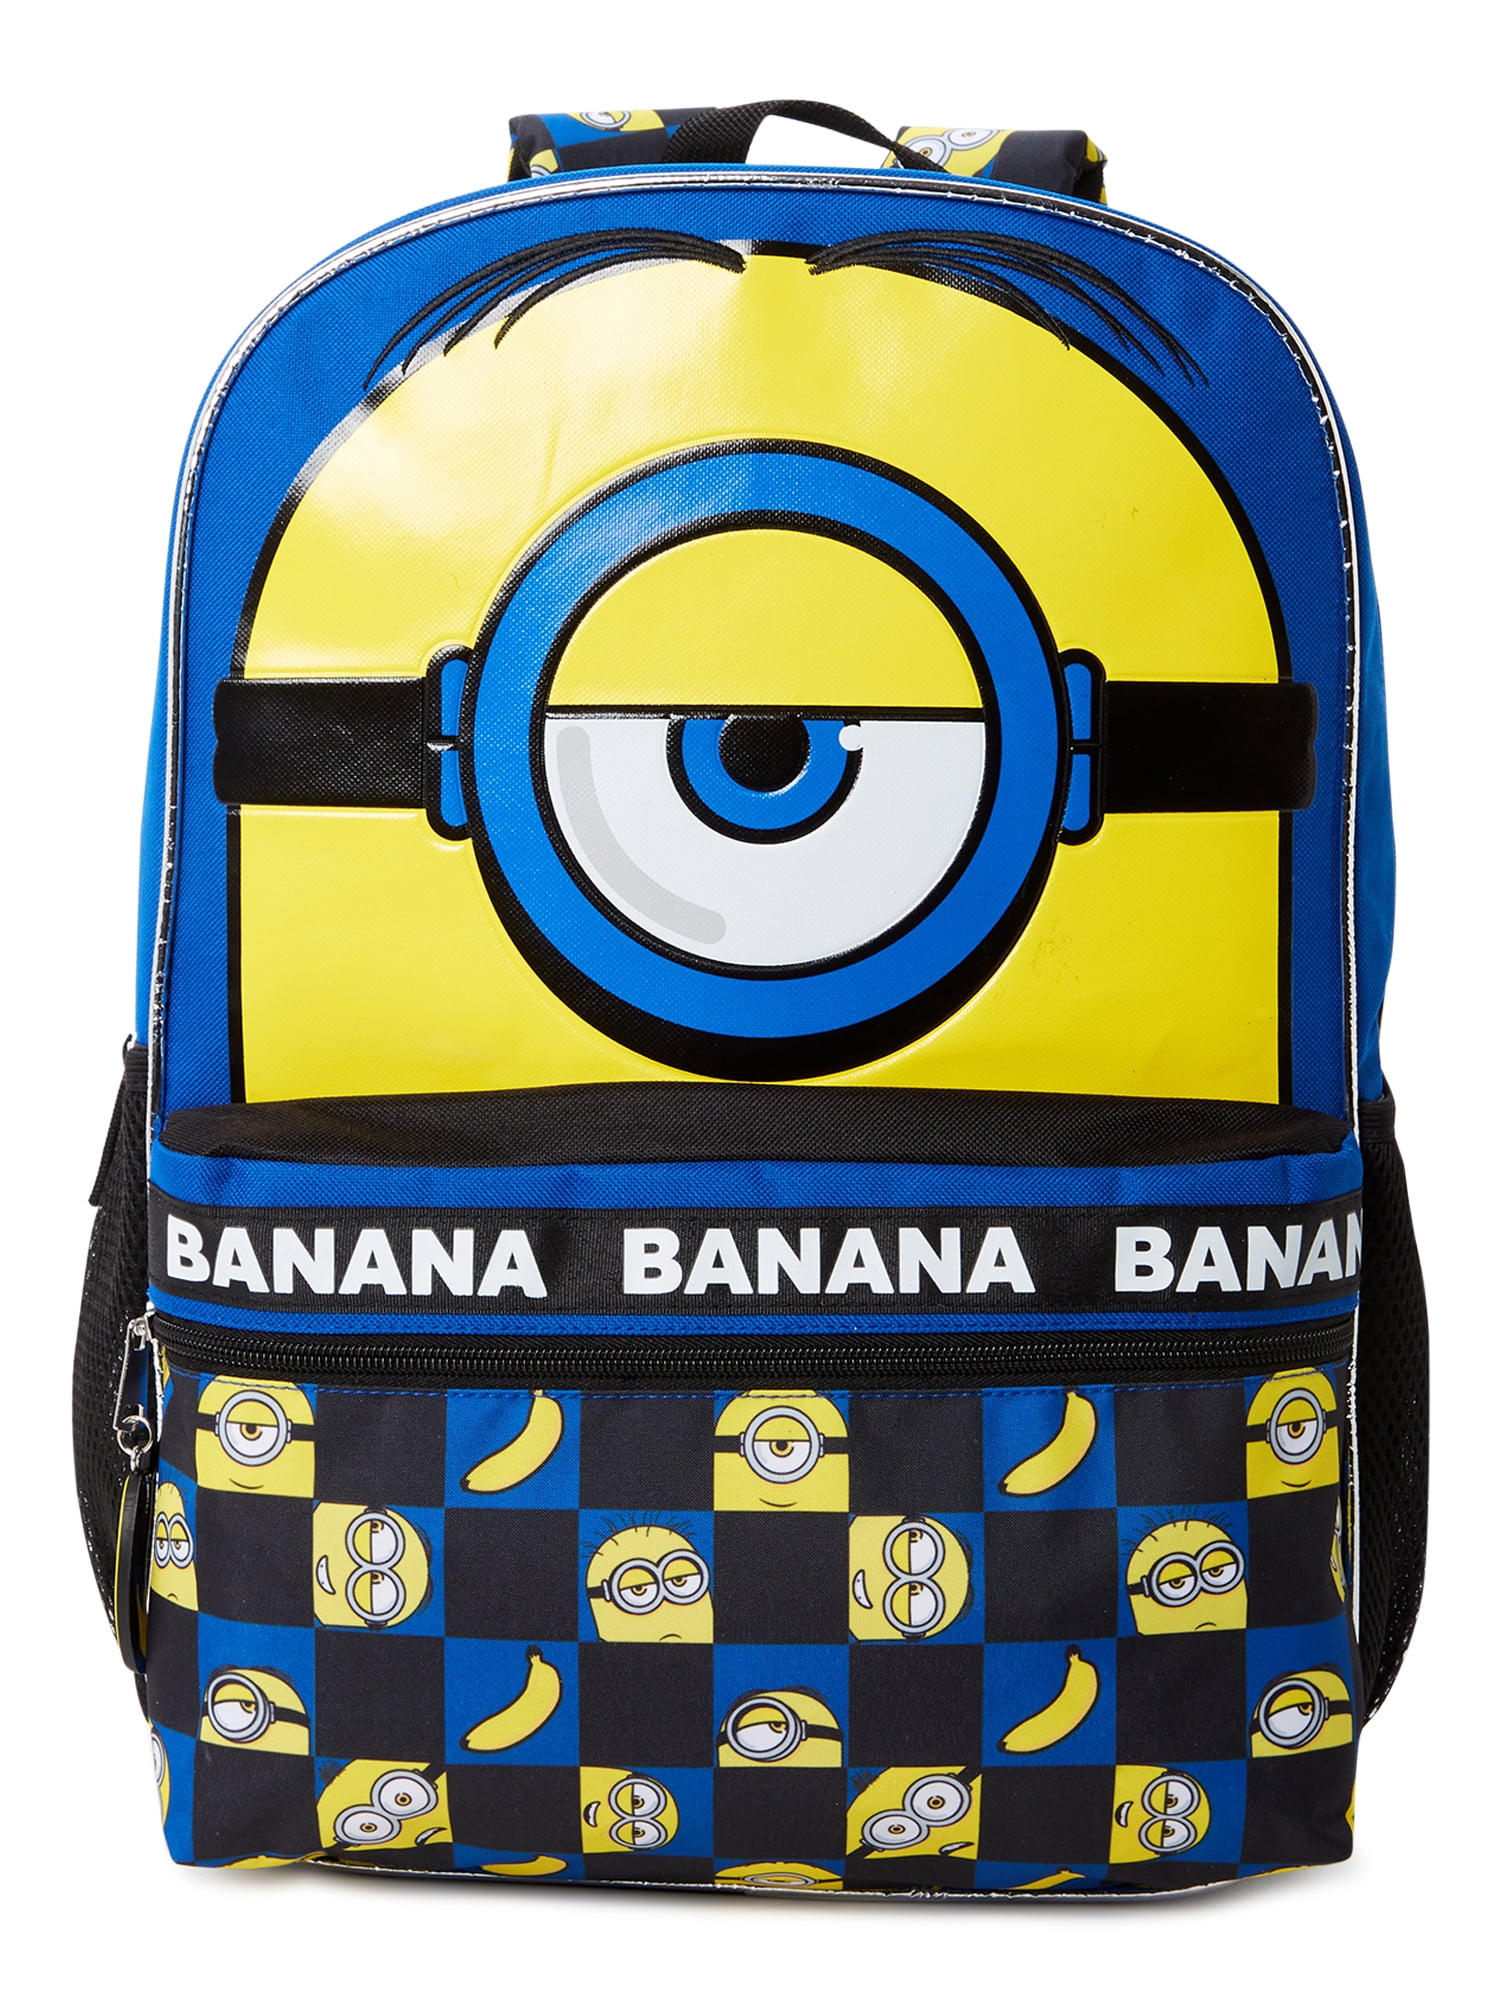 ik heb het gevonden Hechting De Alpen Despicable Me Minions Banana Kids' Backpack Blue Yellow Black - Walmart.com